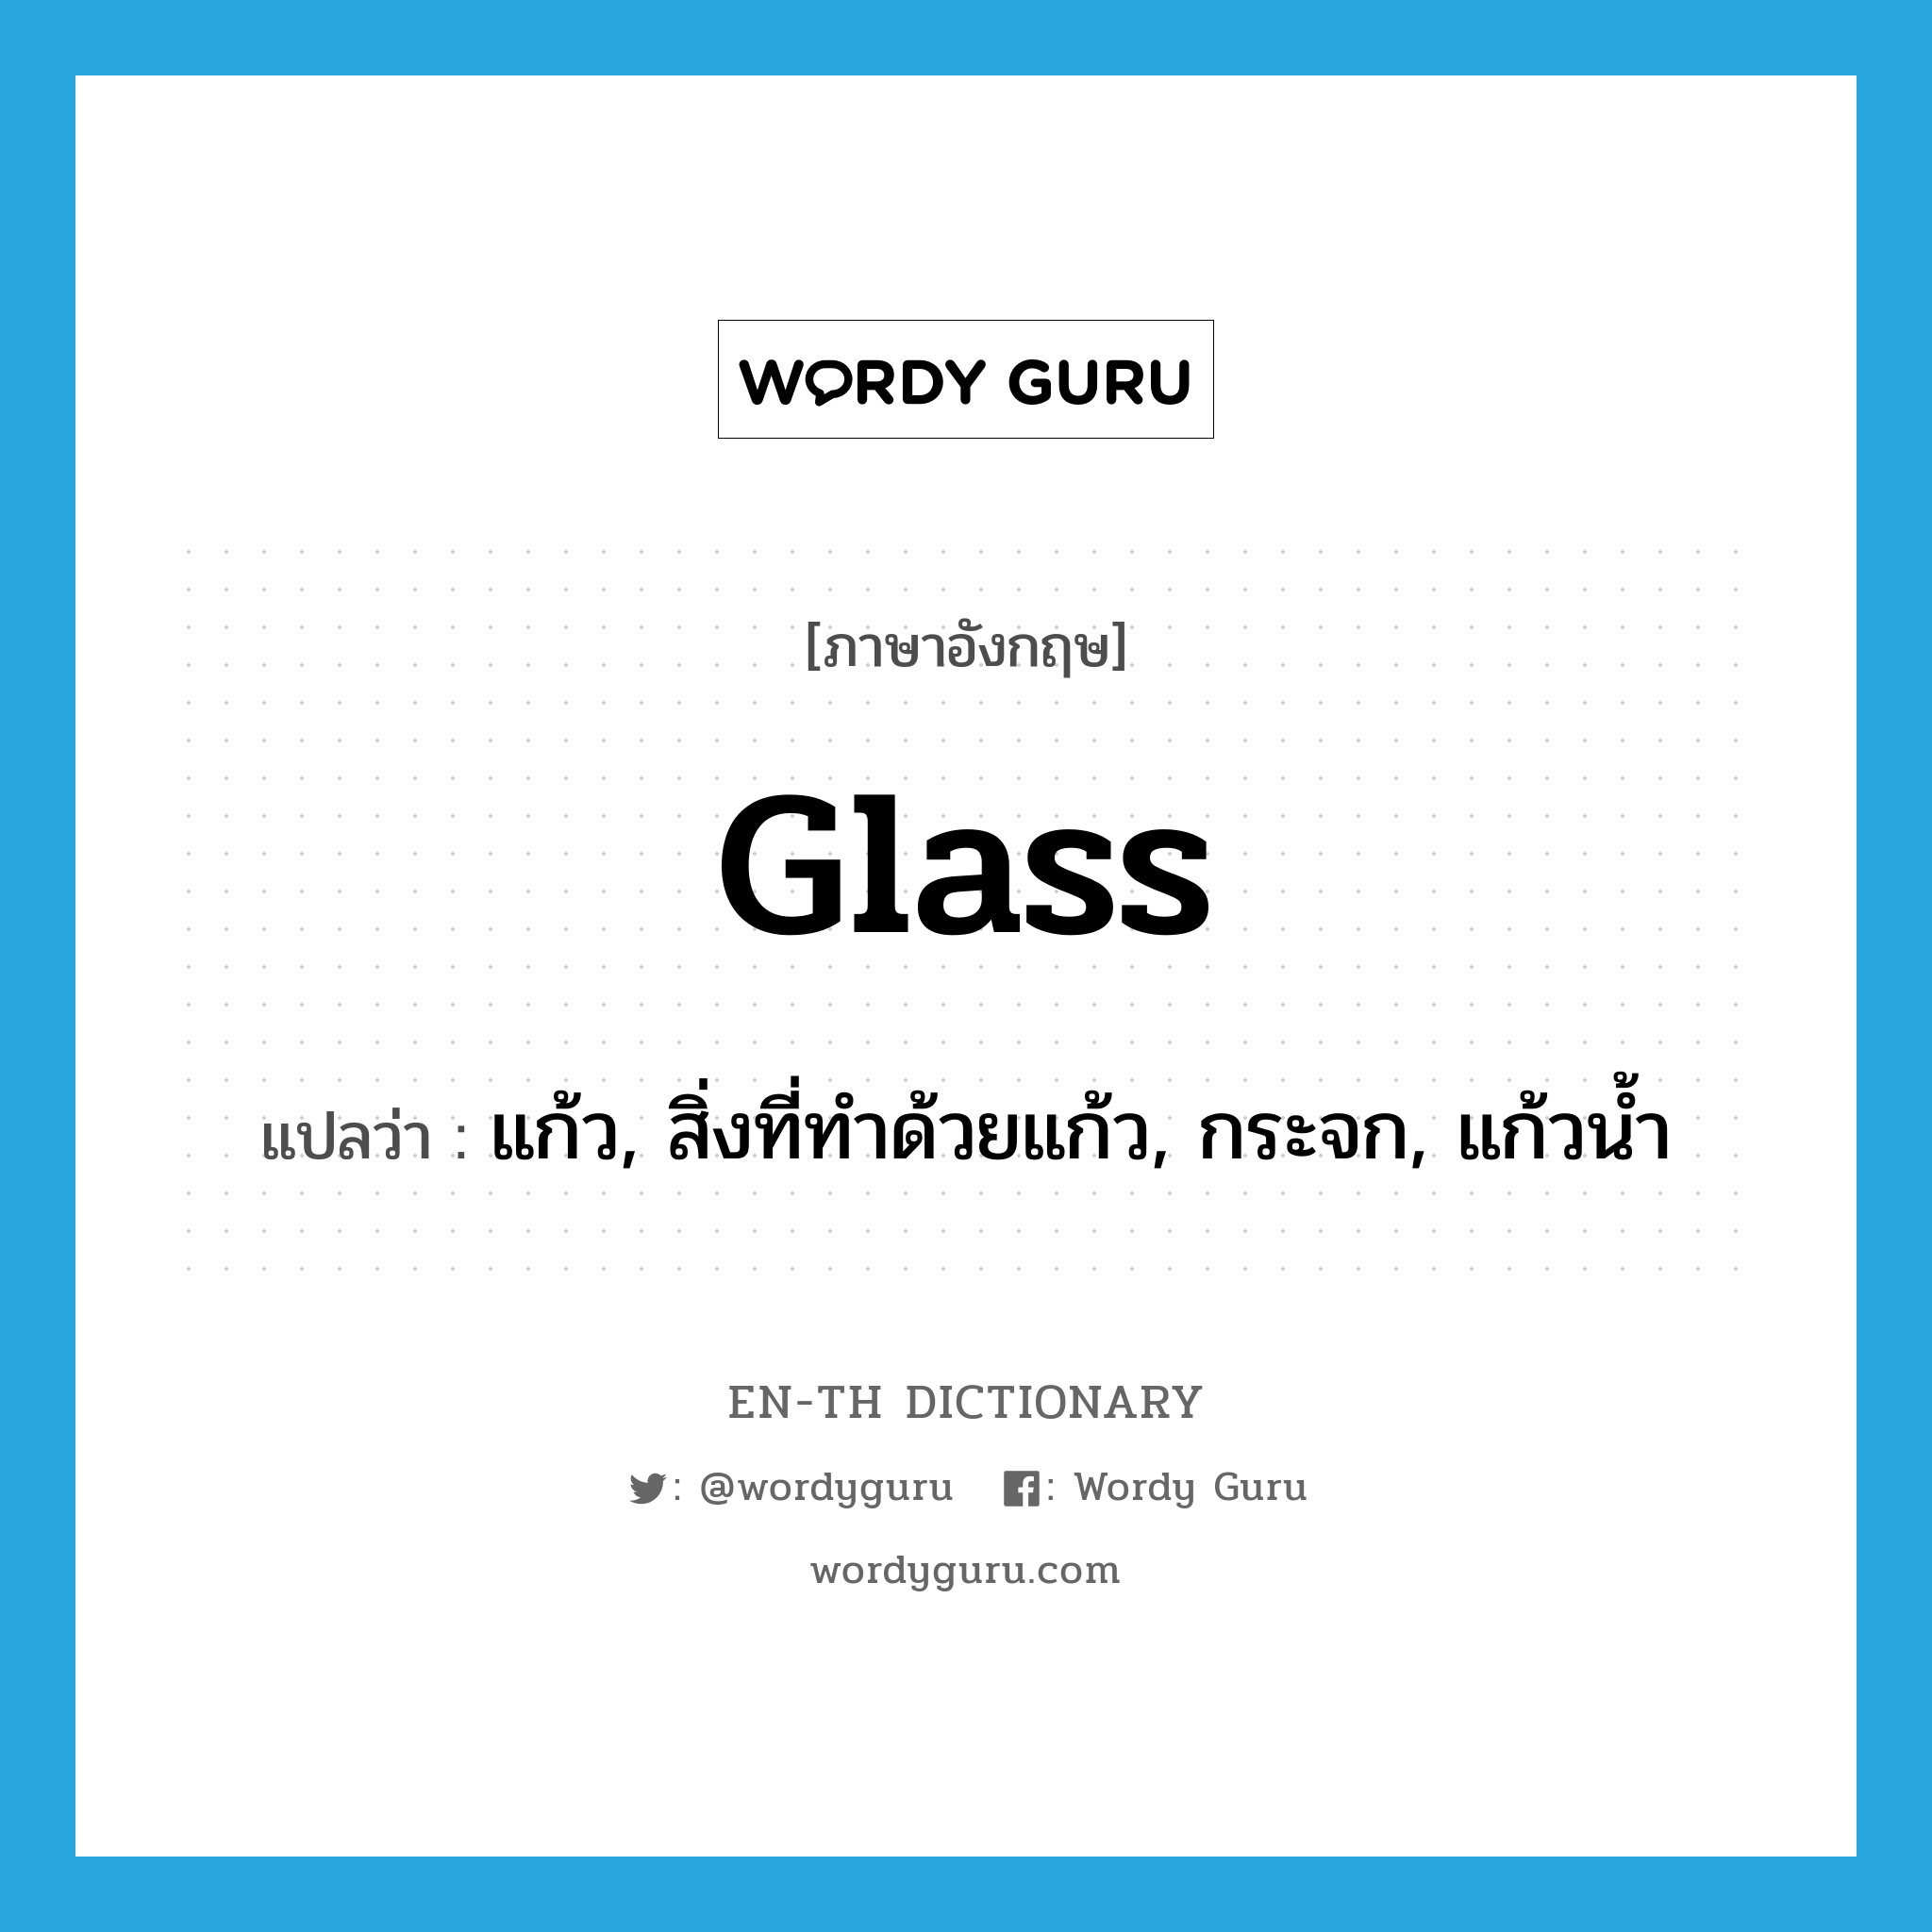 แก้ว, สิ่งที่ทำด้วยแก้ว, กระจก, แก้วน้ำ ภาษาอังกฤษ?, คำศัพท์ภาษาอังกฤษ แก้ว, สิ่งที่ทำด้วยแก้ว, กระจก, แก้วน้ำ แปลว่า glass ประเภท N หมวด N